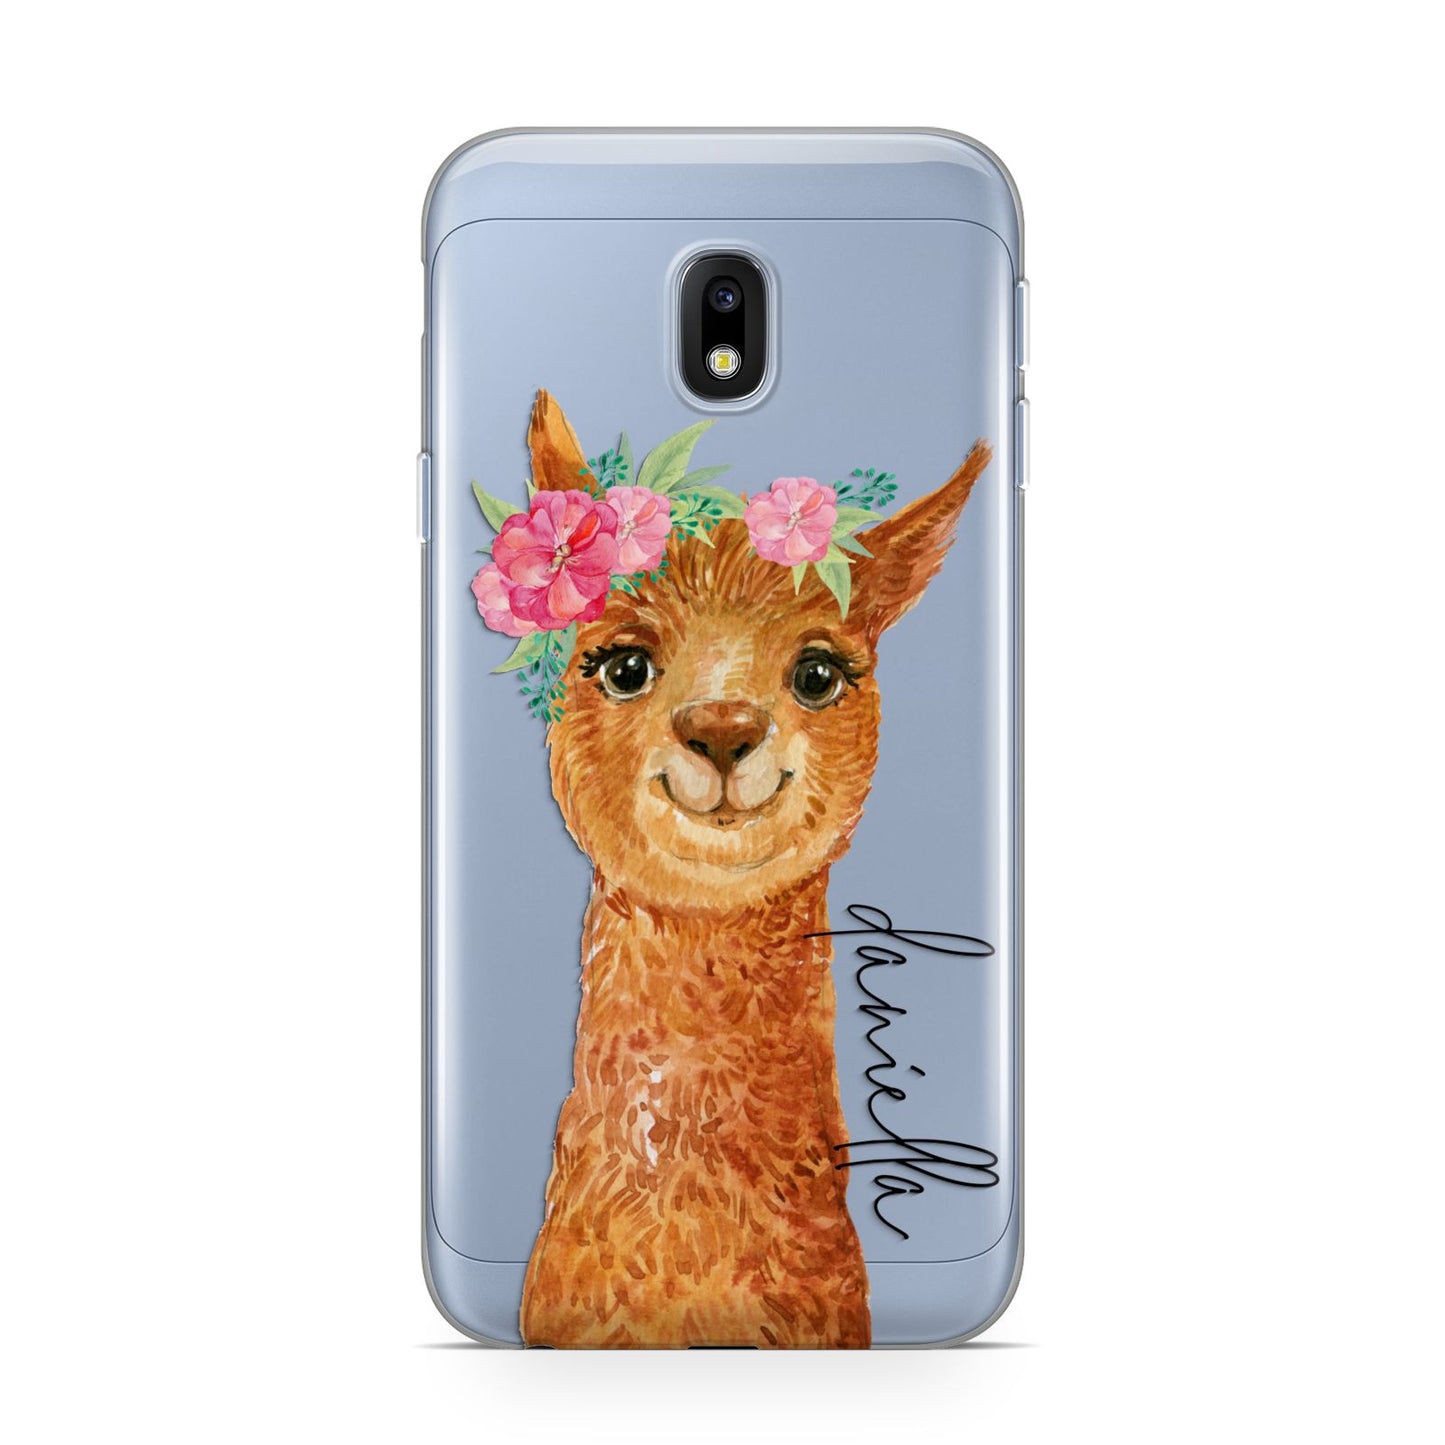 Personalised Llama Samsung Galaxy J3 2017 Case